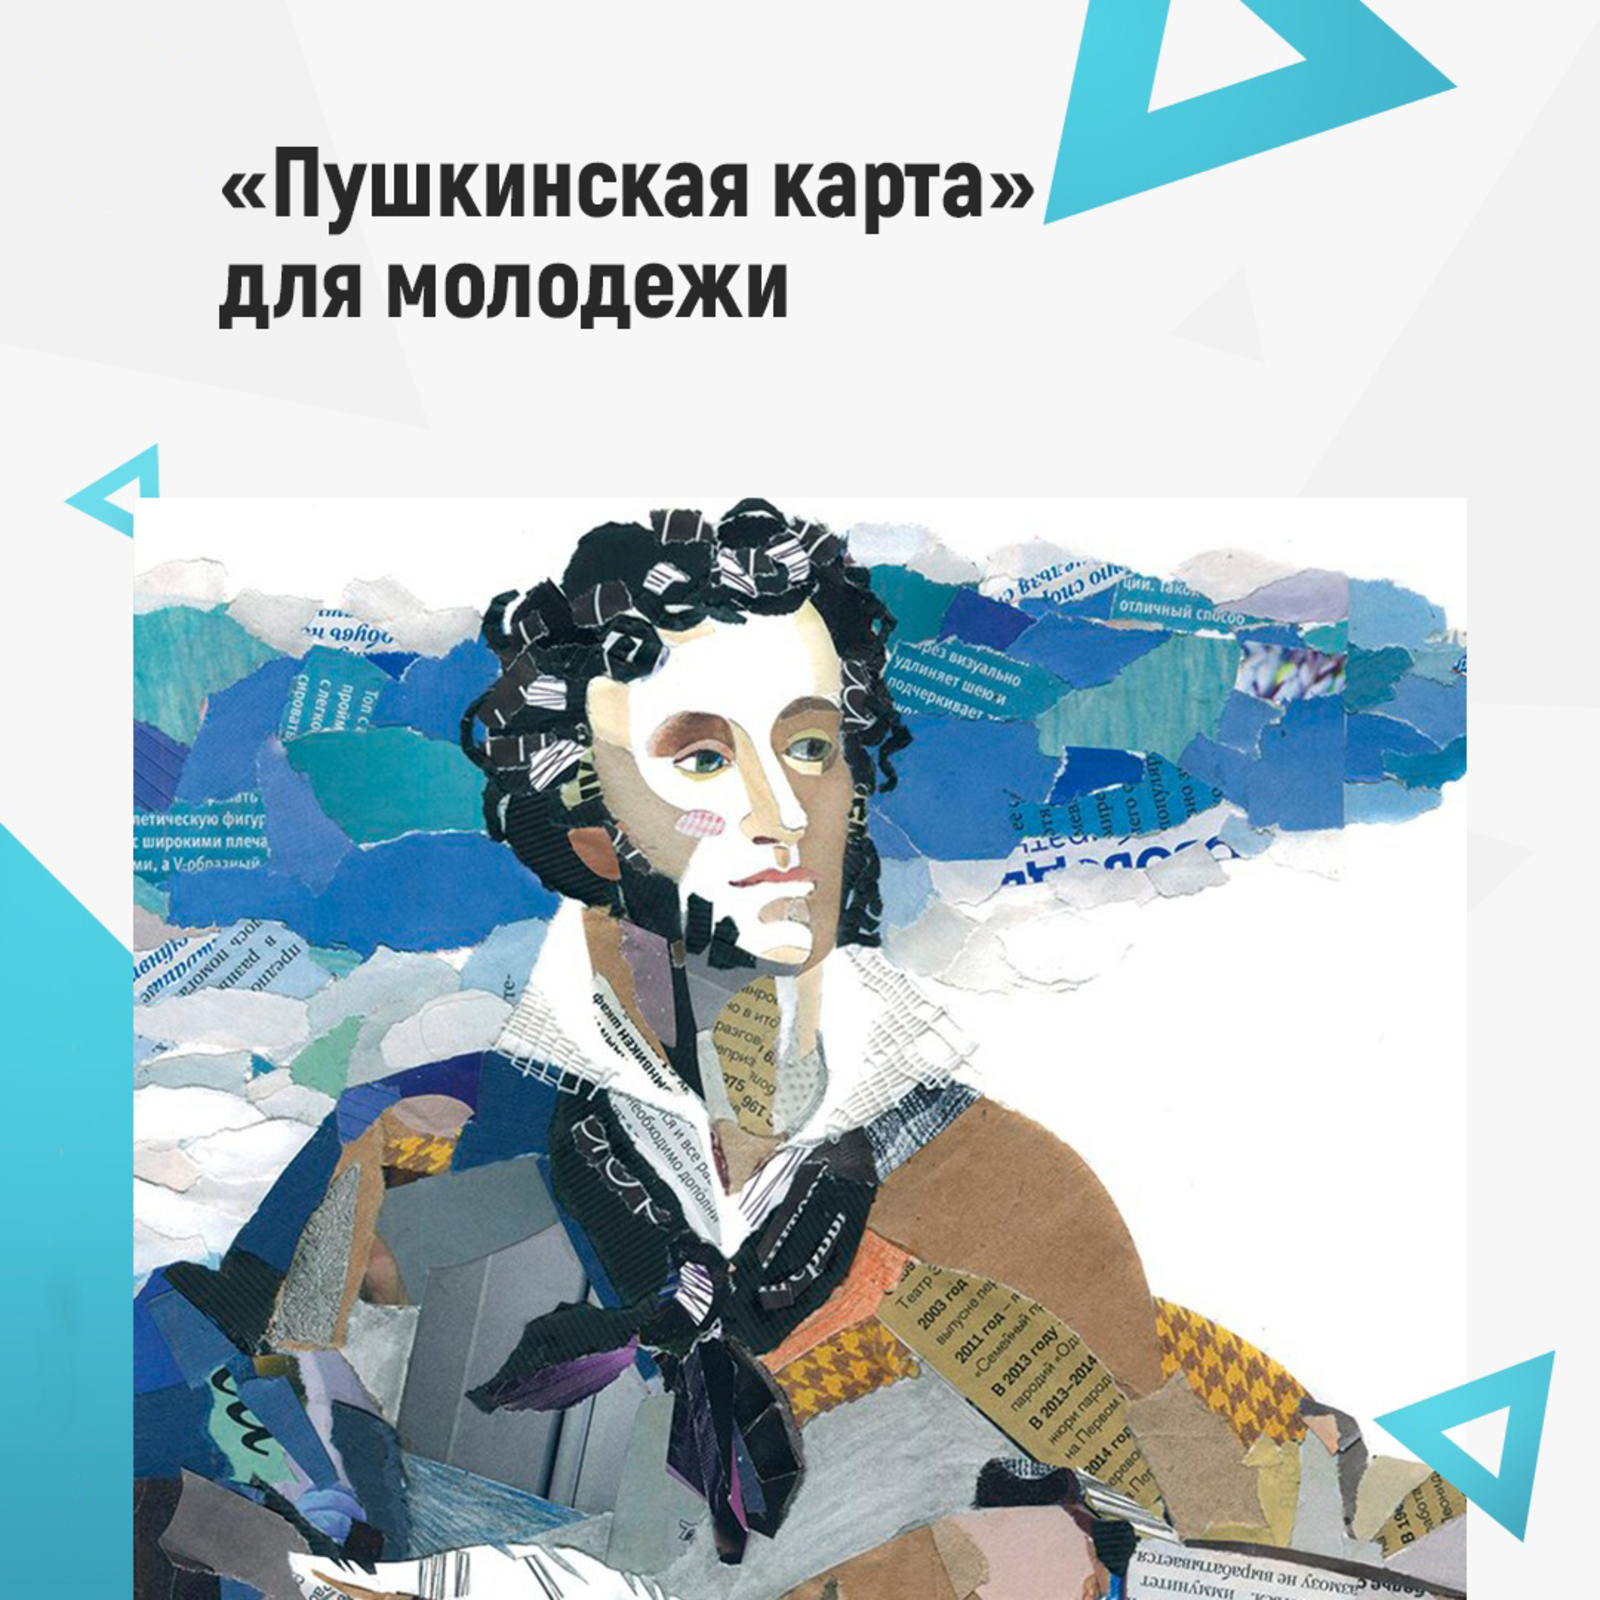 "Пушкинская карта" для молодежи